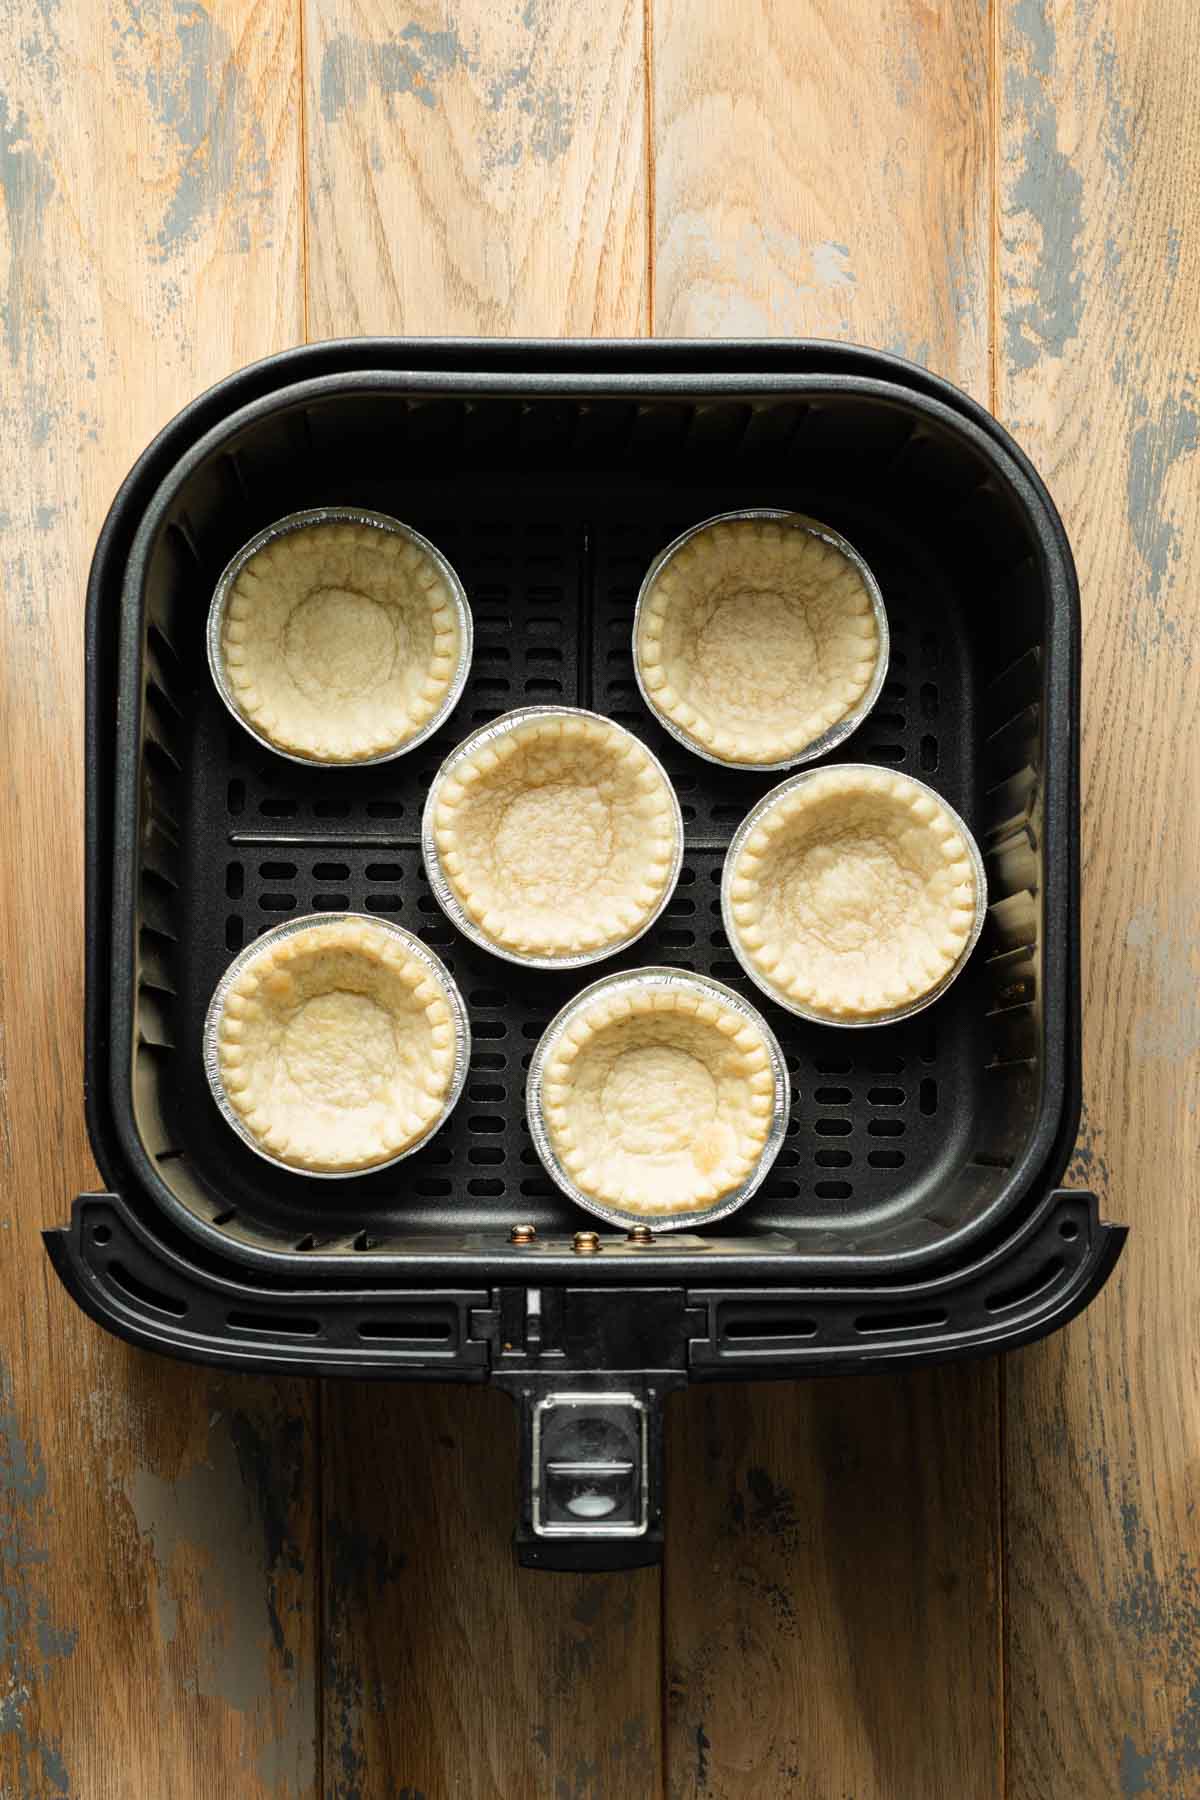 Par-baked mini tart shells in an air fryer basket.